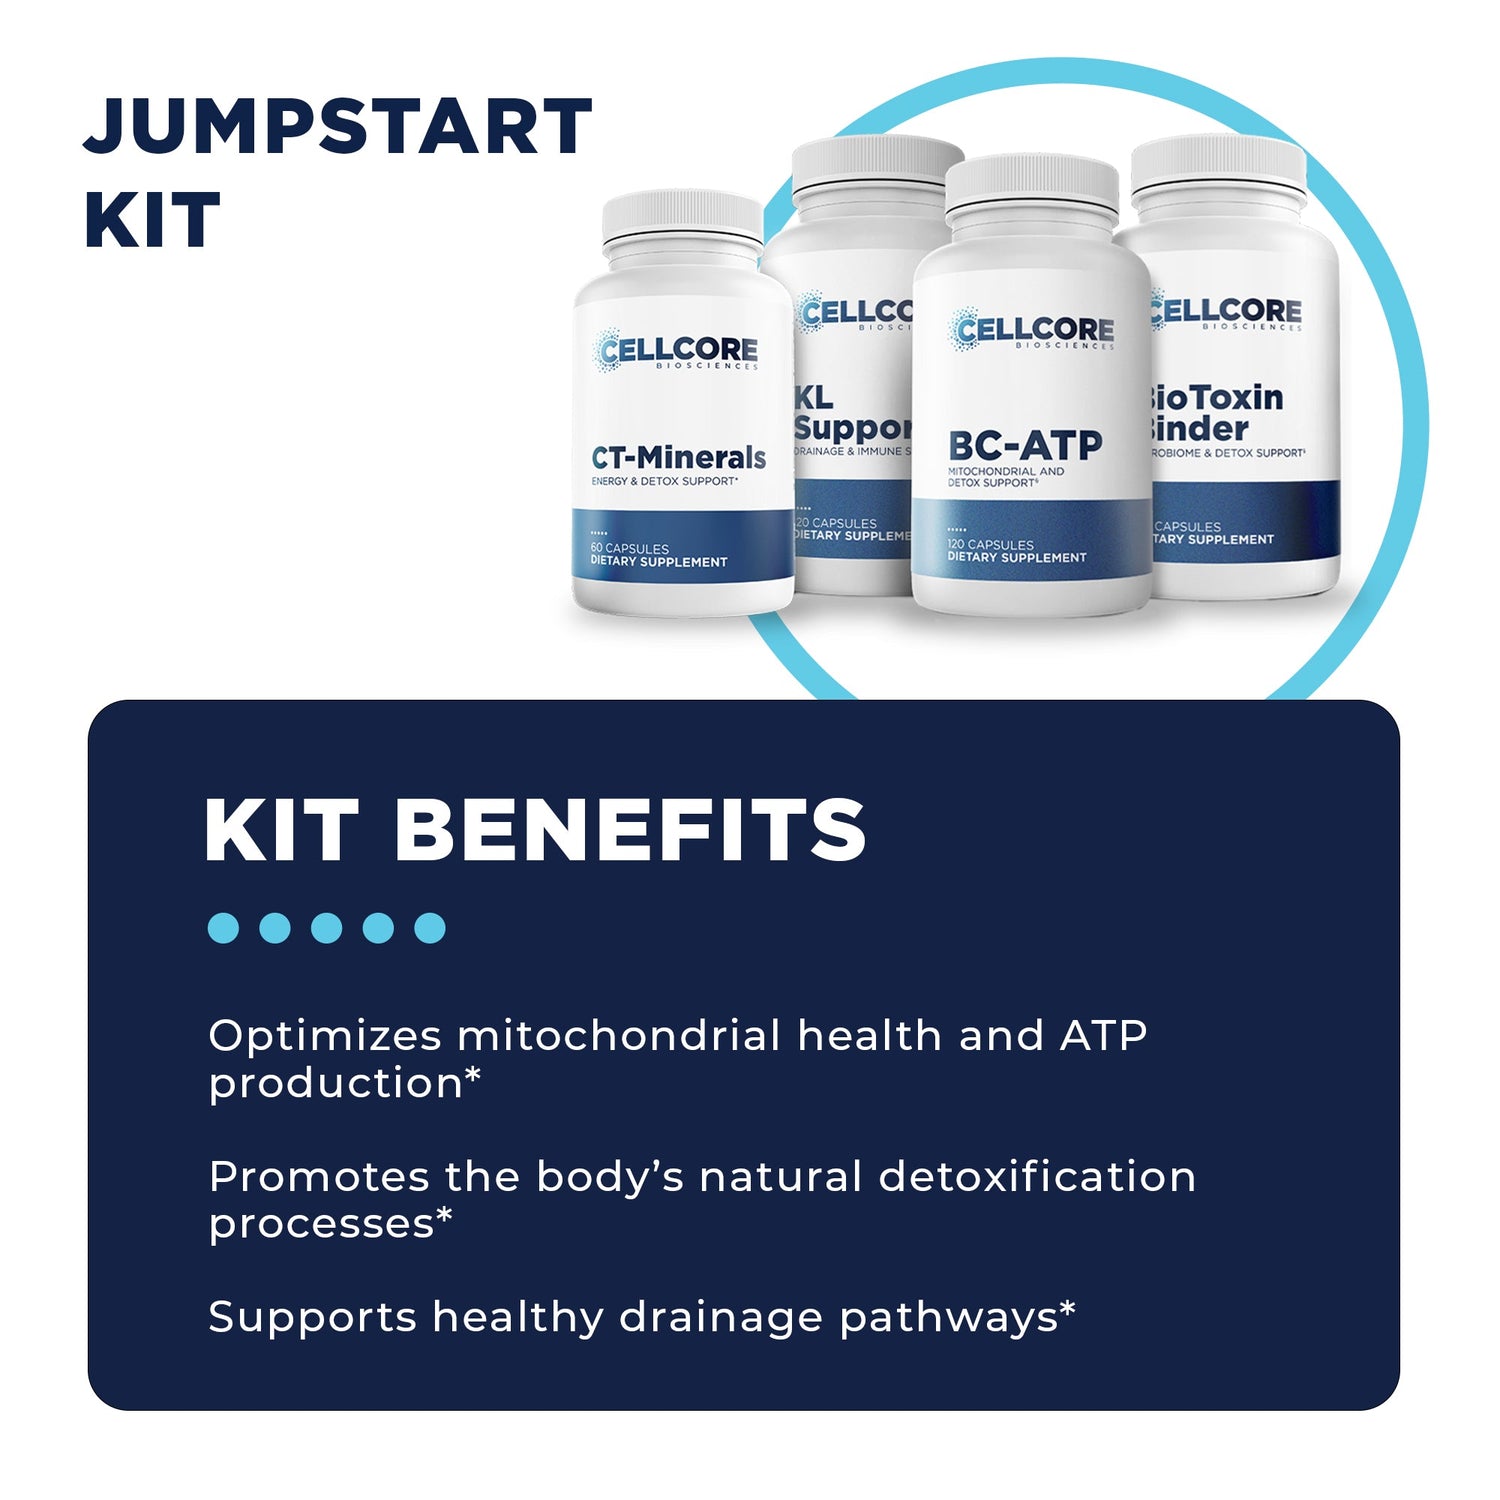 Jumpstart Kit Benefits